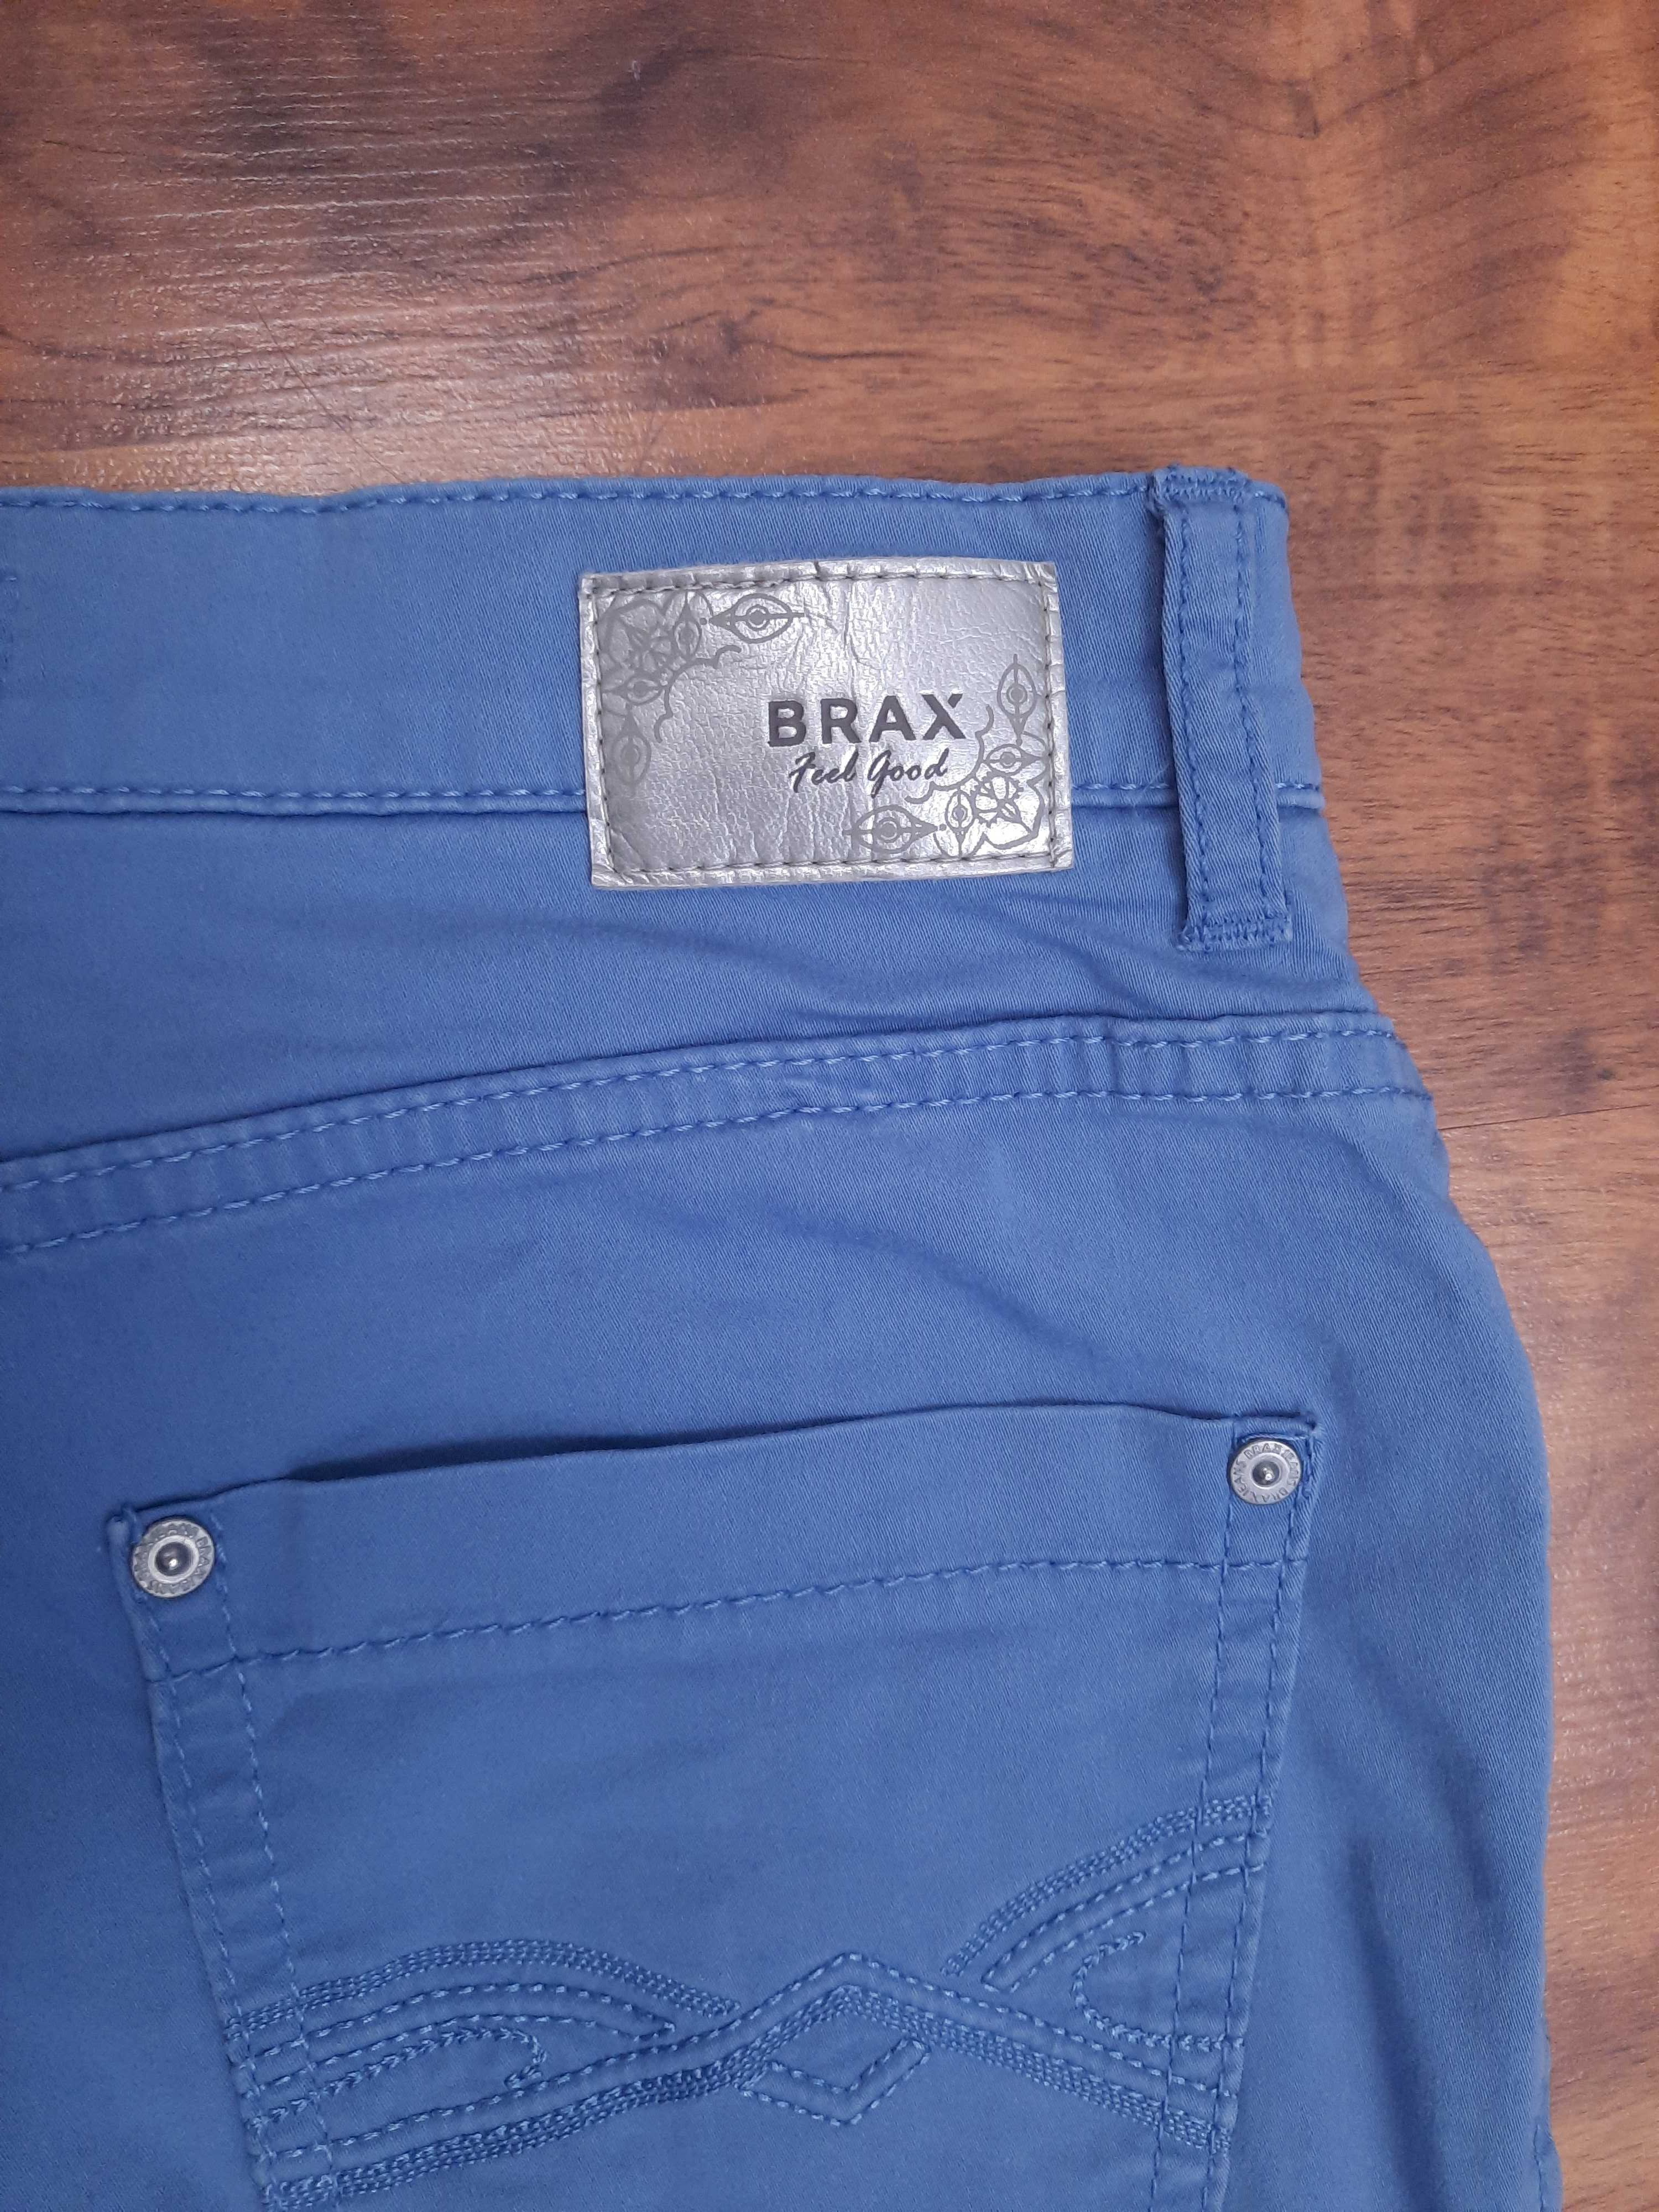 Spodnie materiałowe bawełniane jeans braxy rurki Brax W26 L32 S M